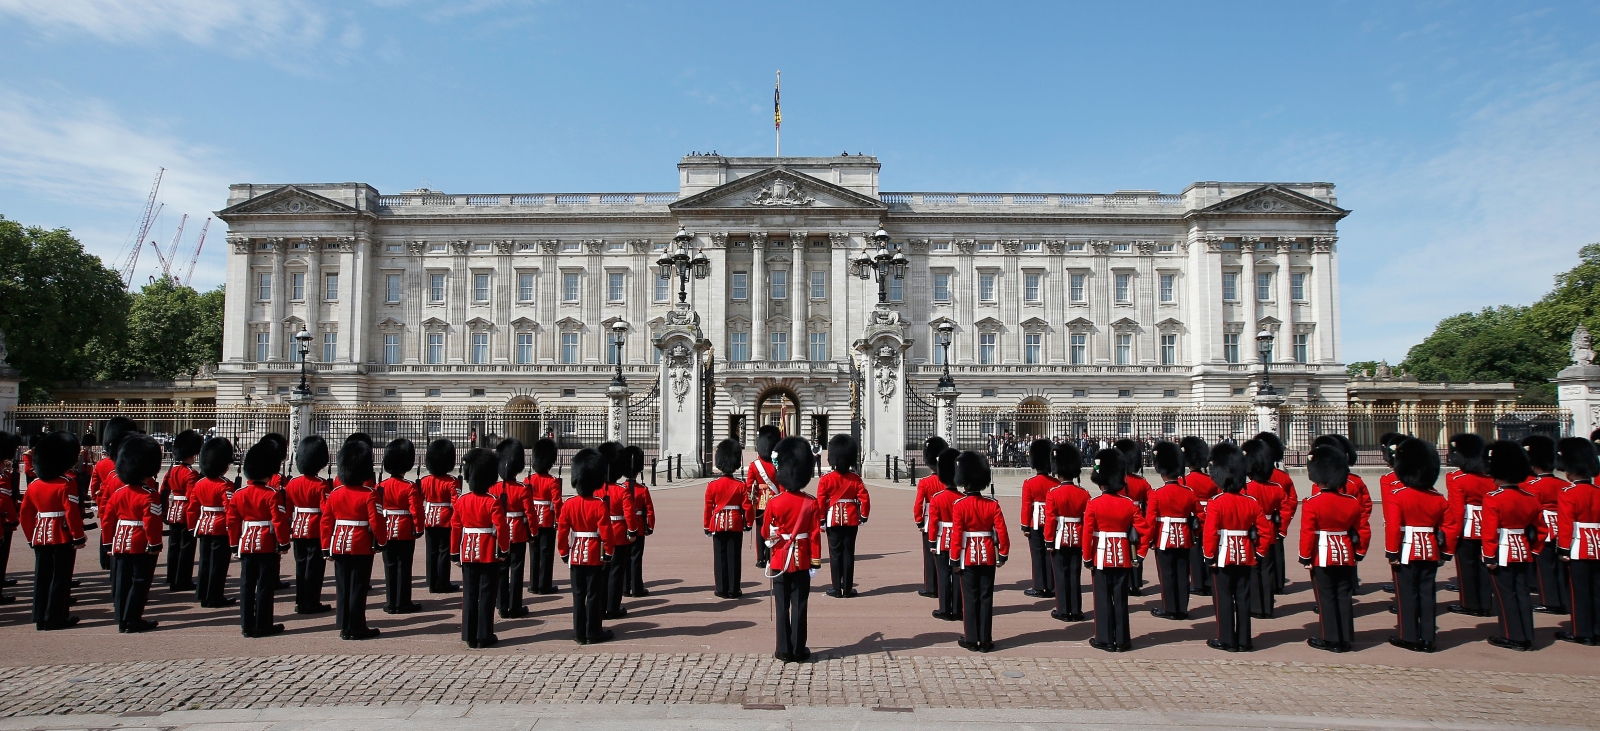 Buckingham Palace #12